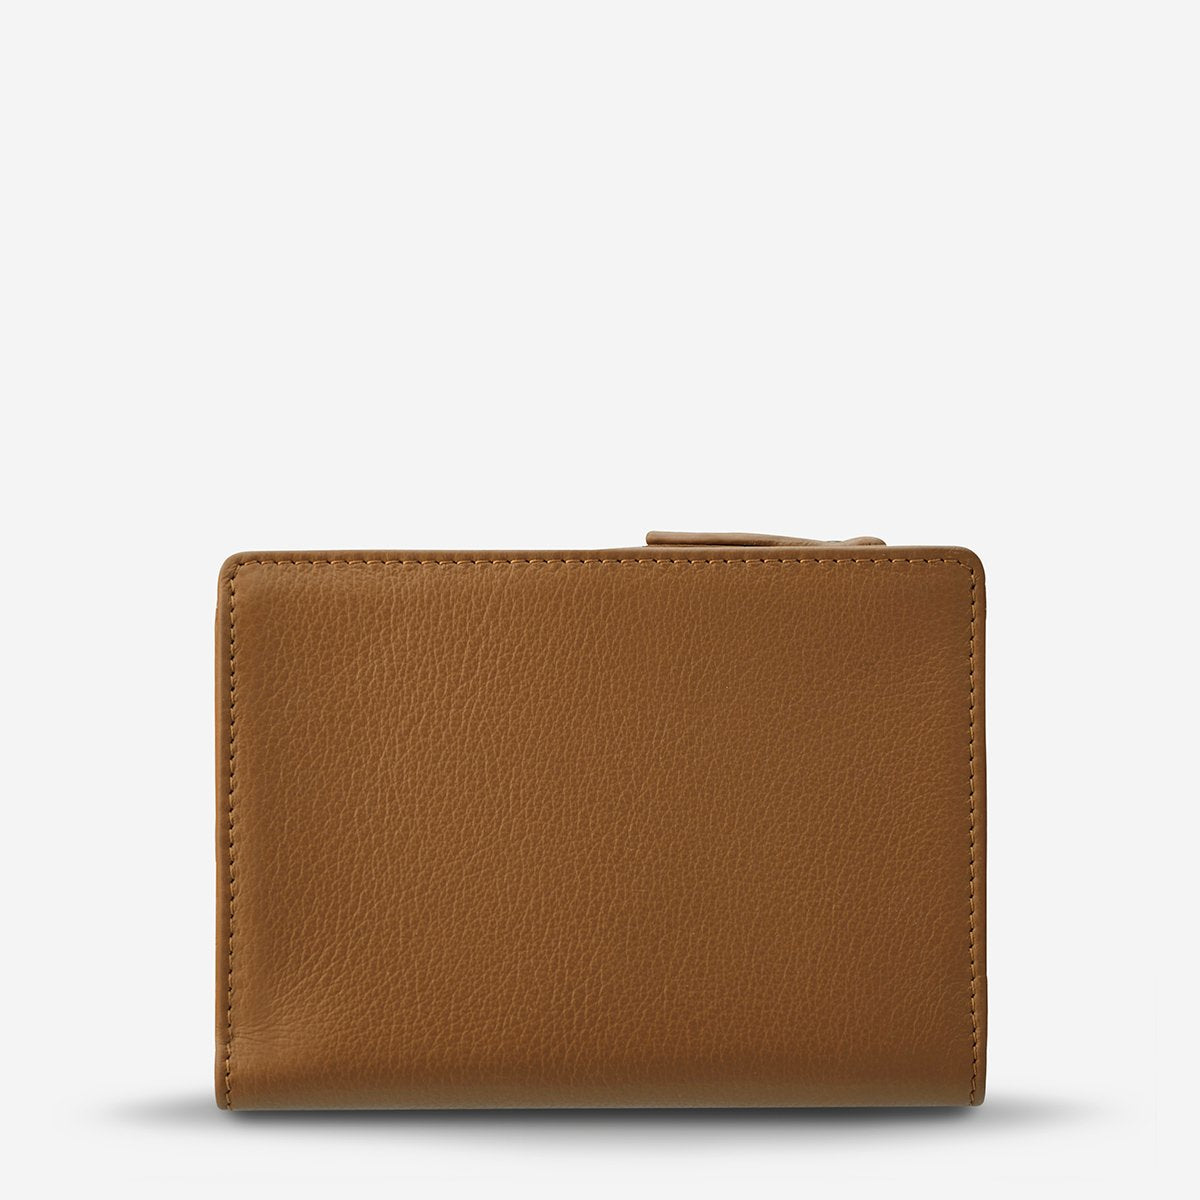 Insurgency Leather Wallet in Tan